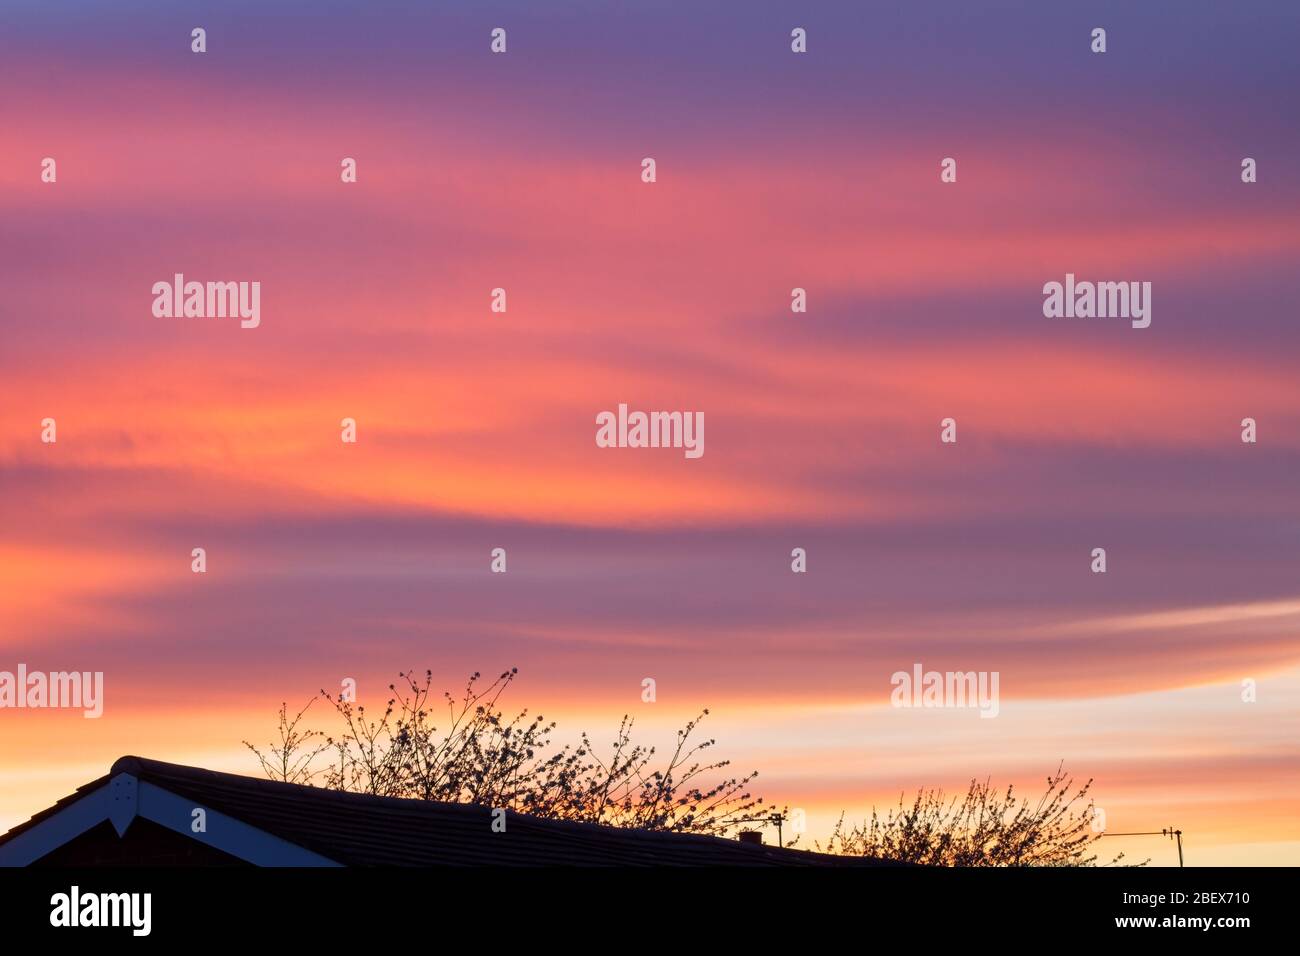 Un coucher de soleil printanier en avril avec des tons d'orange, de violet, de bleu et de gris avec la silhouette d'un toit et des branches d'arbres au premier plan. Banque D'Images